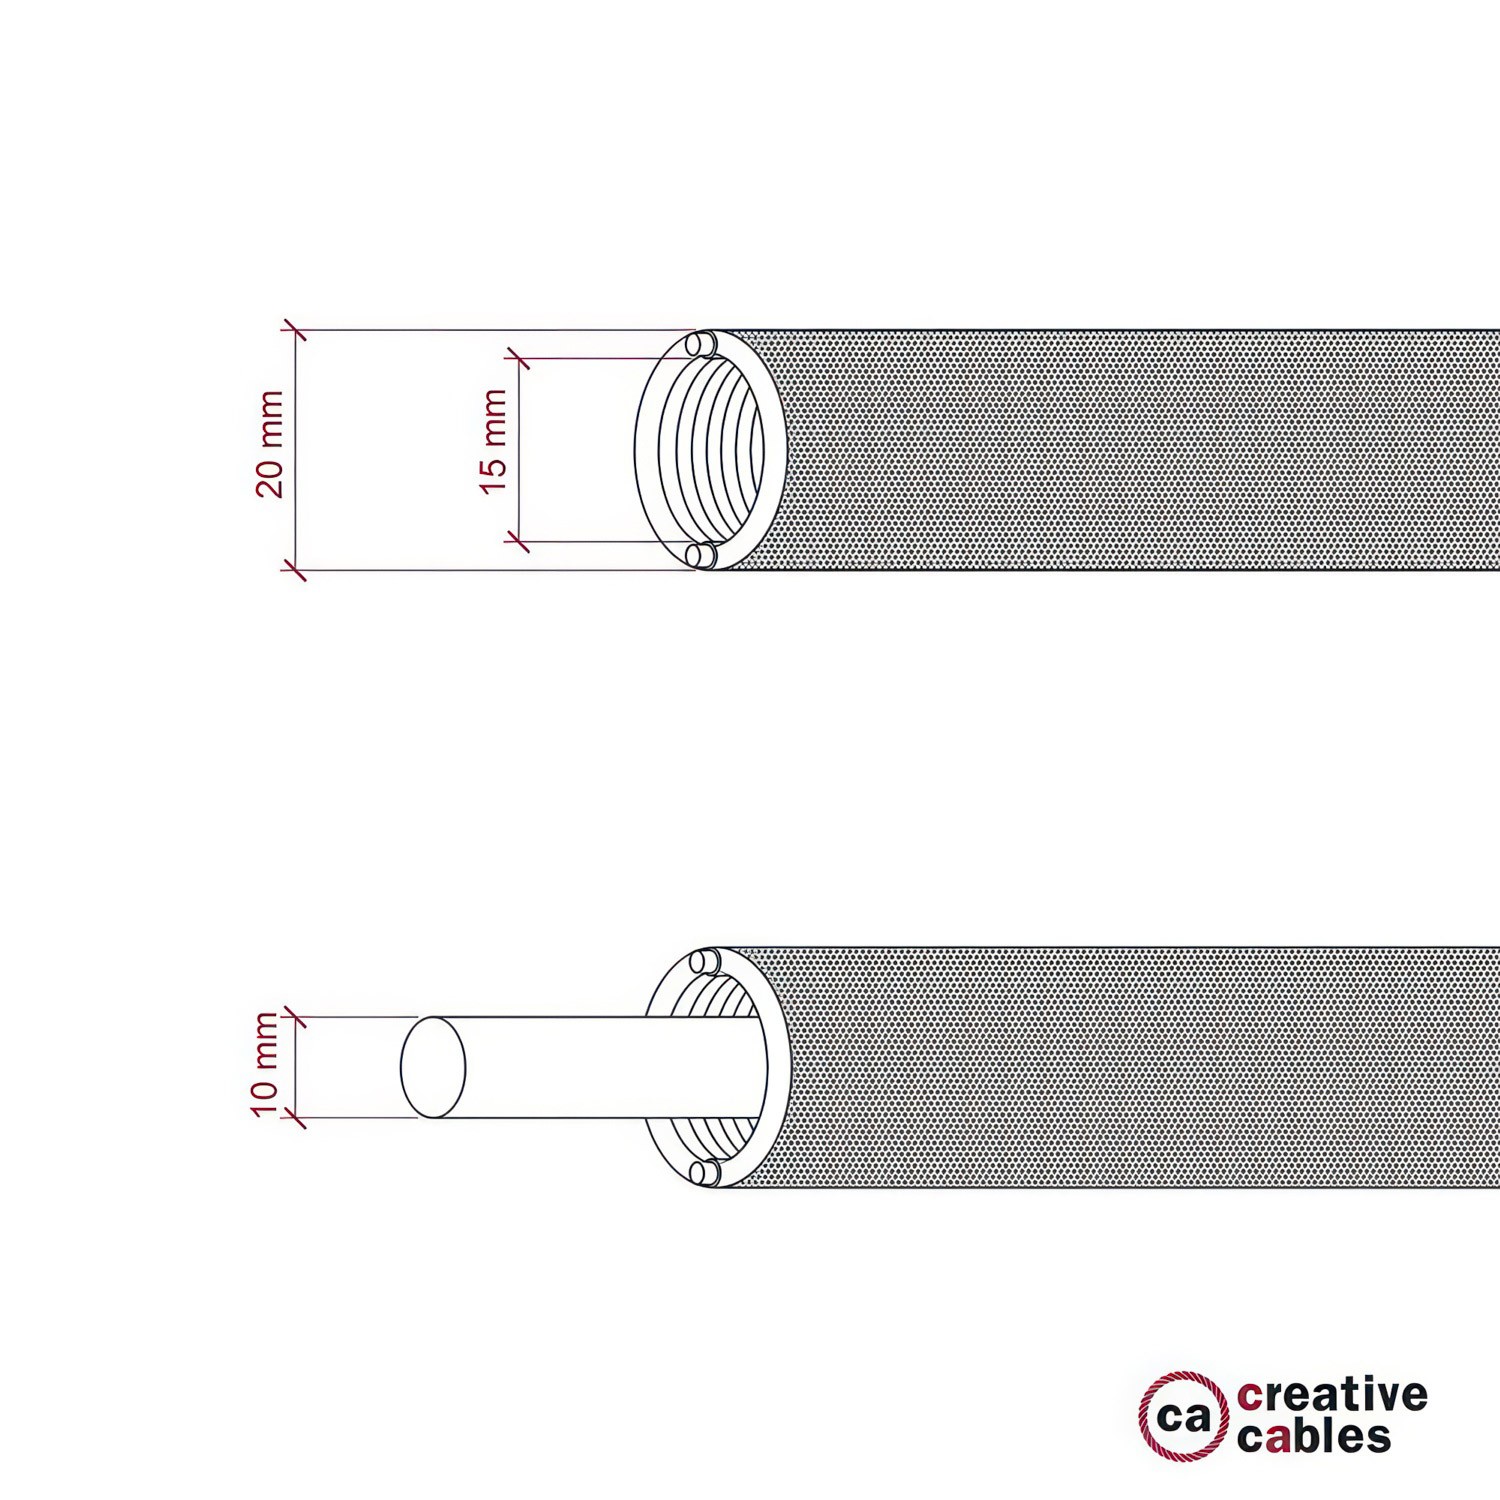 Creative-Tube prilagodljiva cev za kable, fluorescentno oranžne barve RF15, tekstil, premer 20 mm